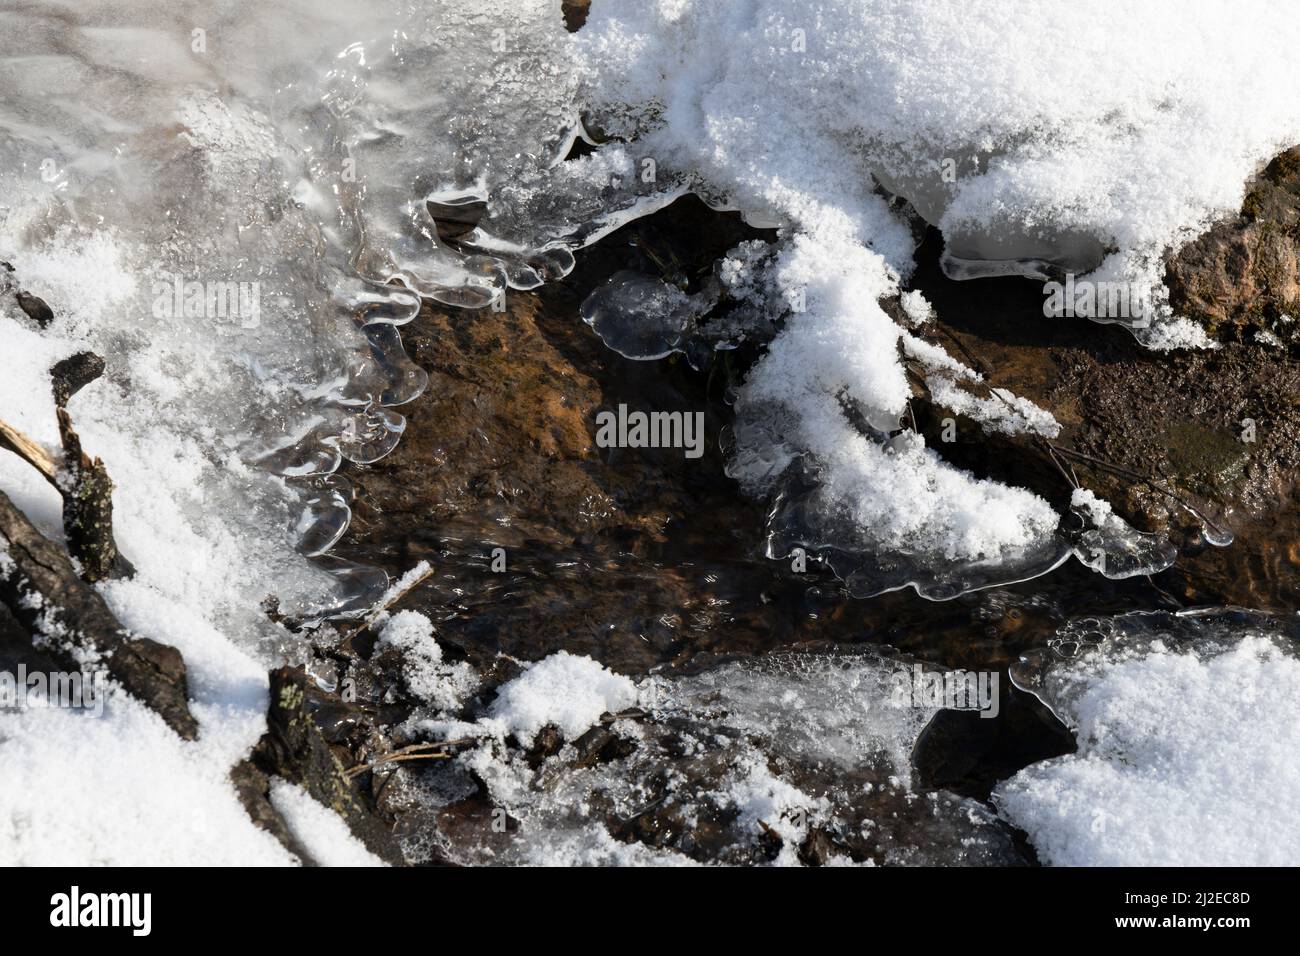 Immagini Stock - Sfondo Invernale Con Neve E Gelo Con Spazio Di Copia.  Acqua Ghiacciata.. Image 156192523